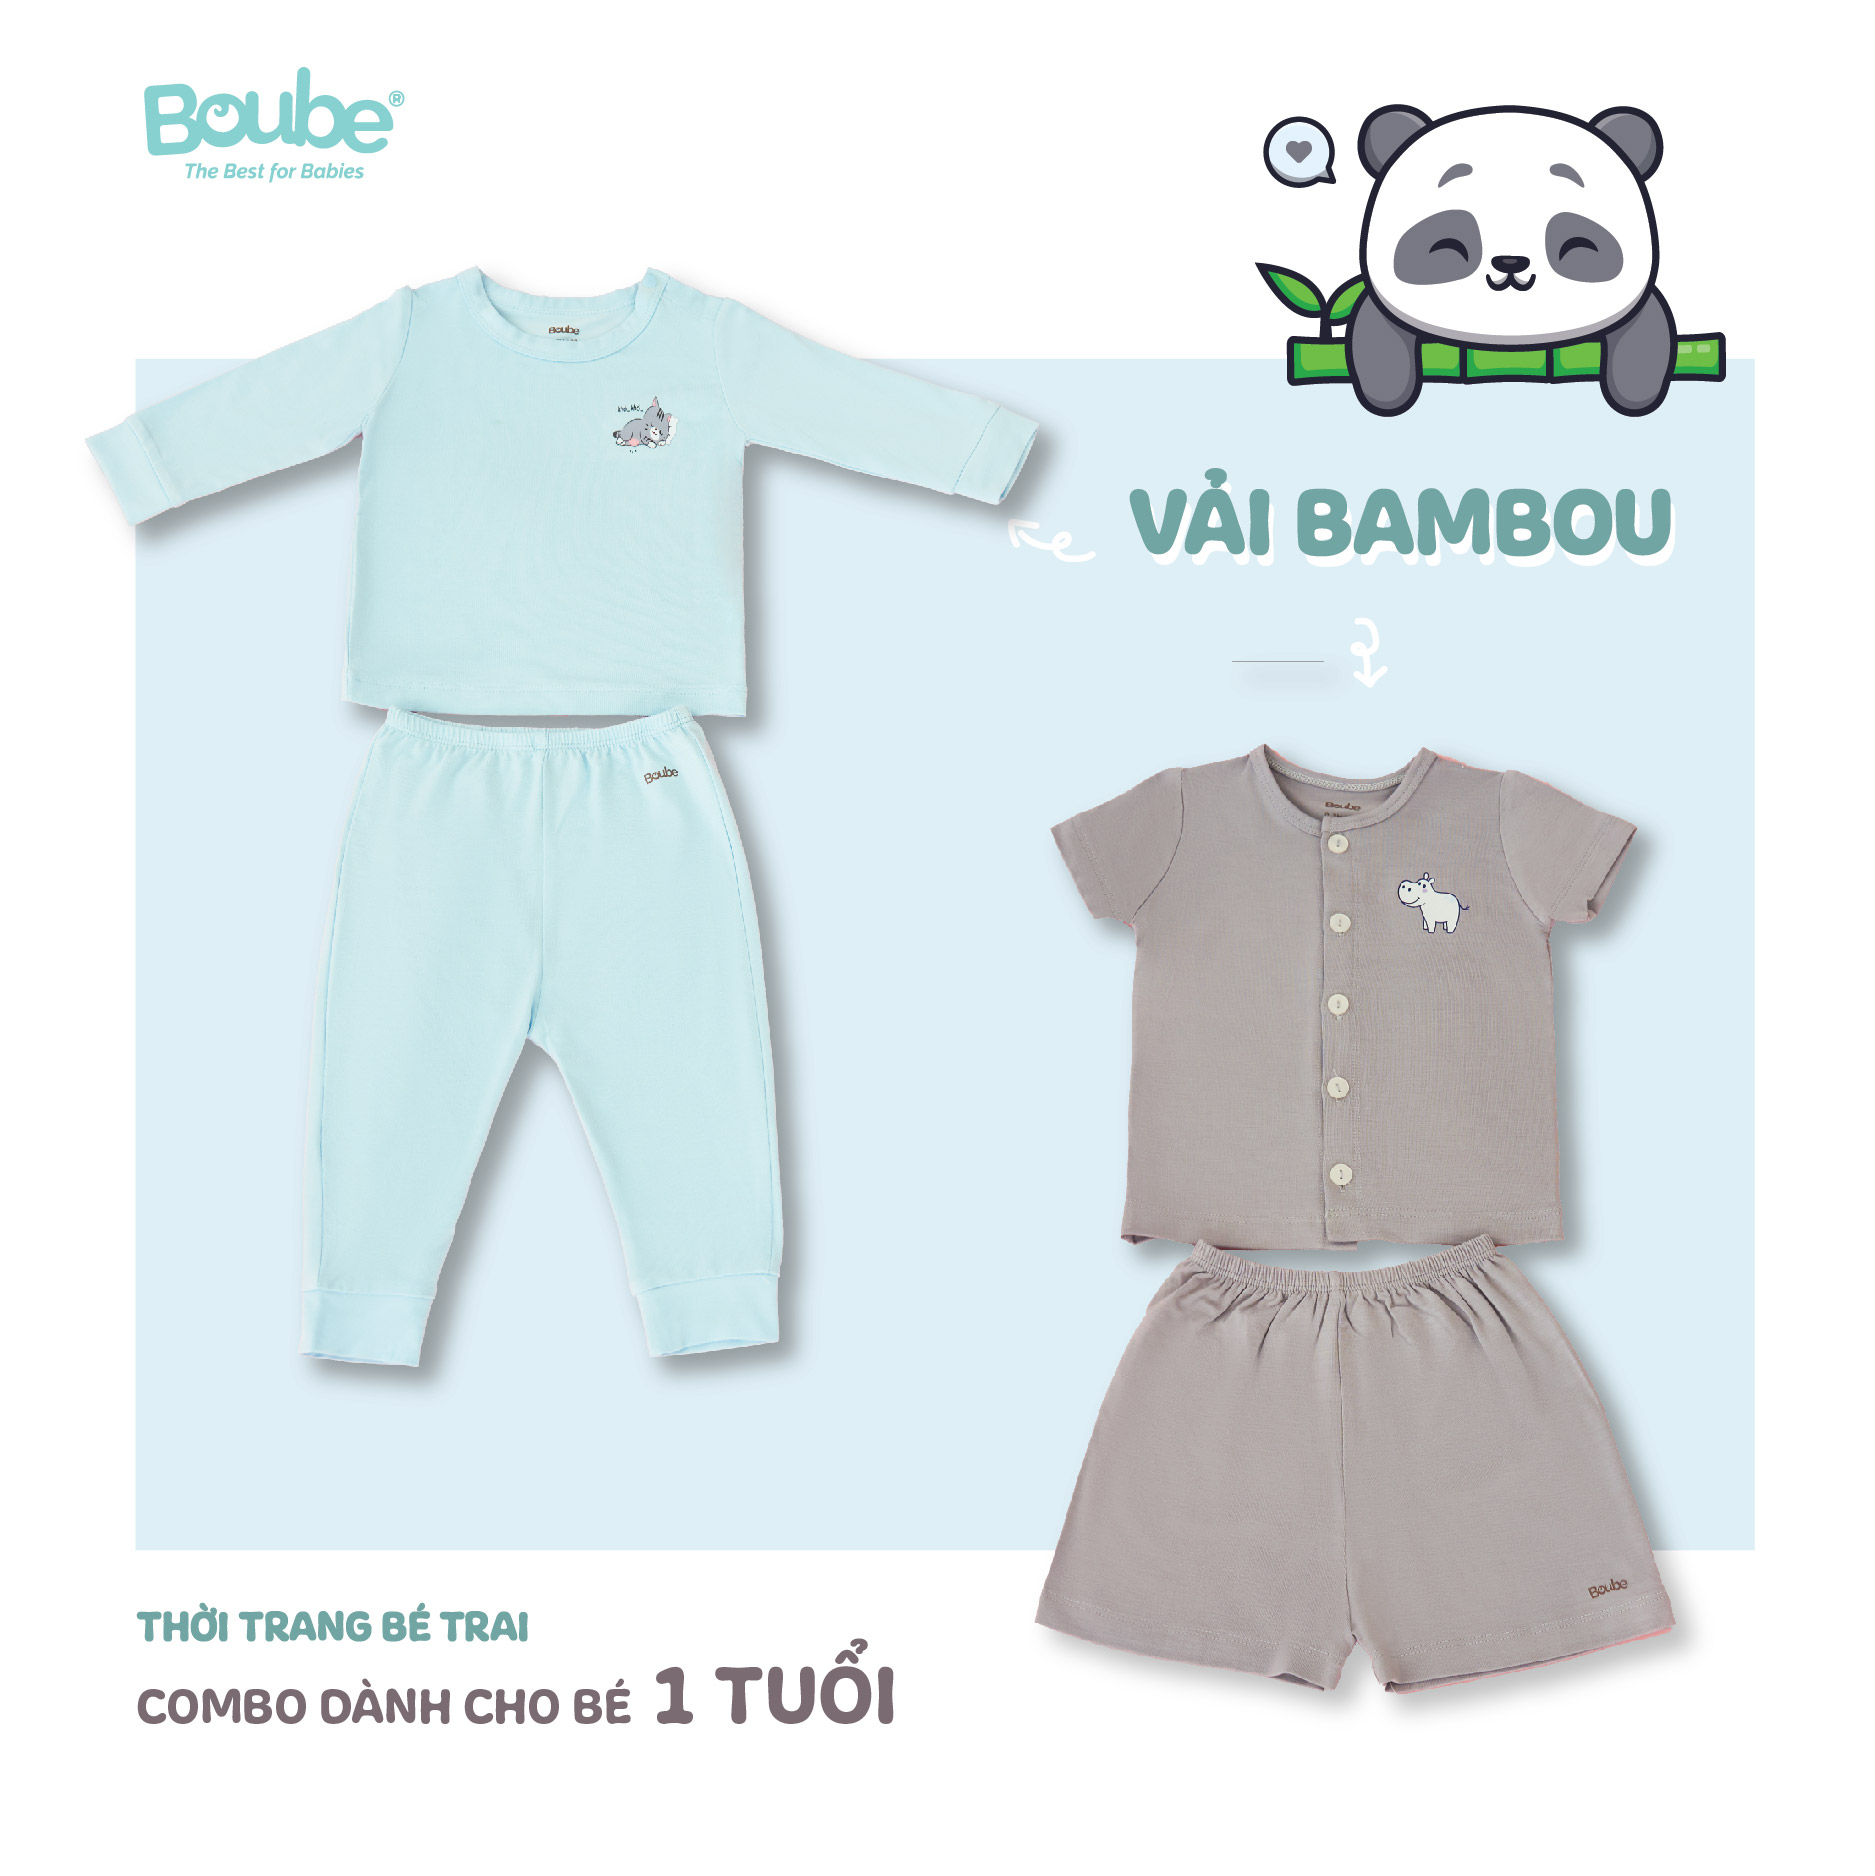  Combo tiết kiệm, 2 bộ quần áo cho bé trai 1 tuổi Boube, chất liệu vải sợi tre Bamboo thông minh, thoải mái - Size 9-18M